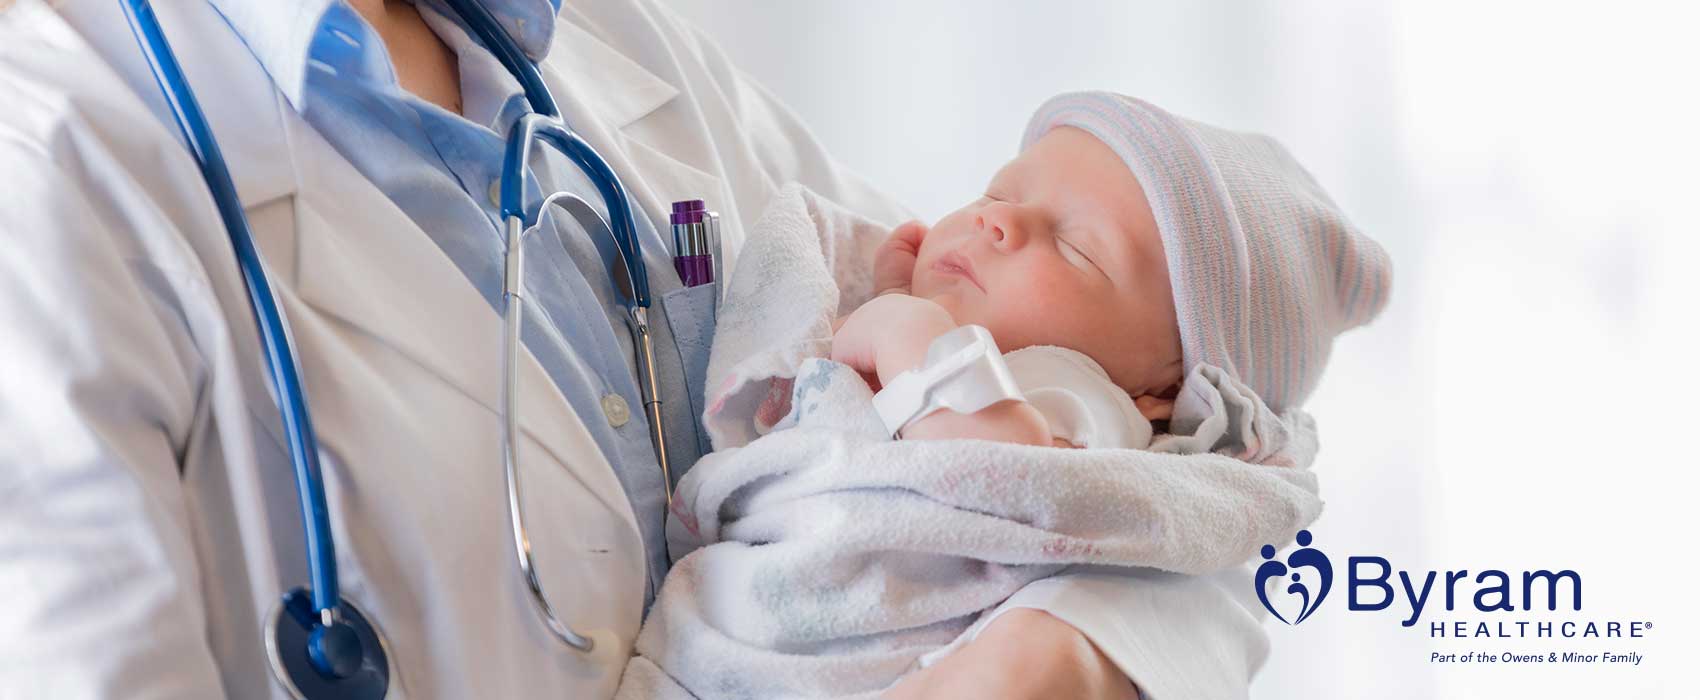 Un médico sosteniendo en brazos a un recién nacido.